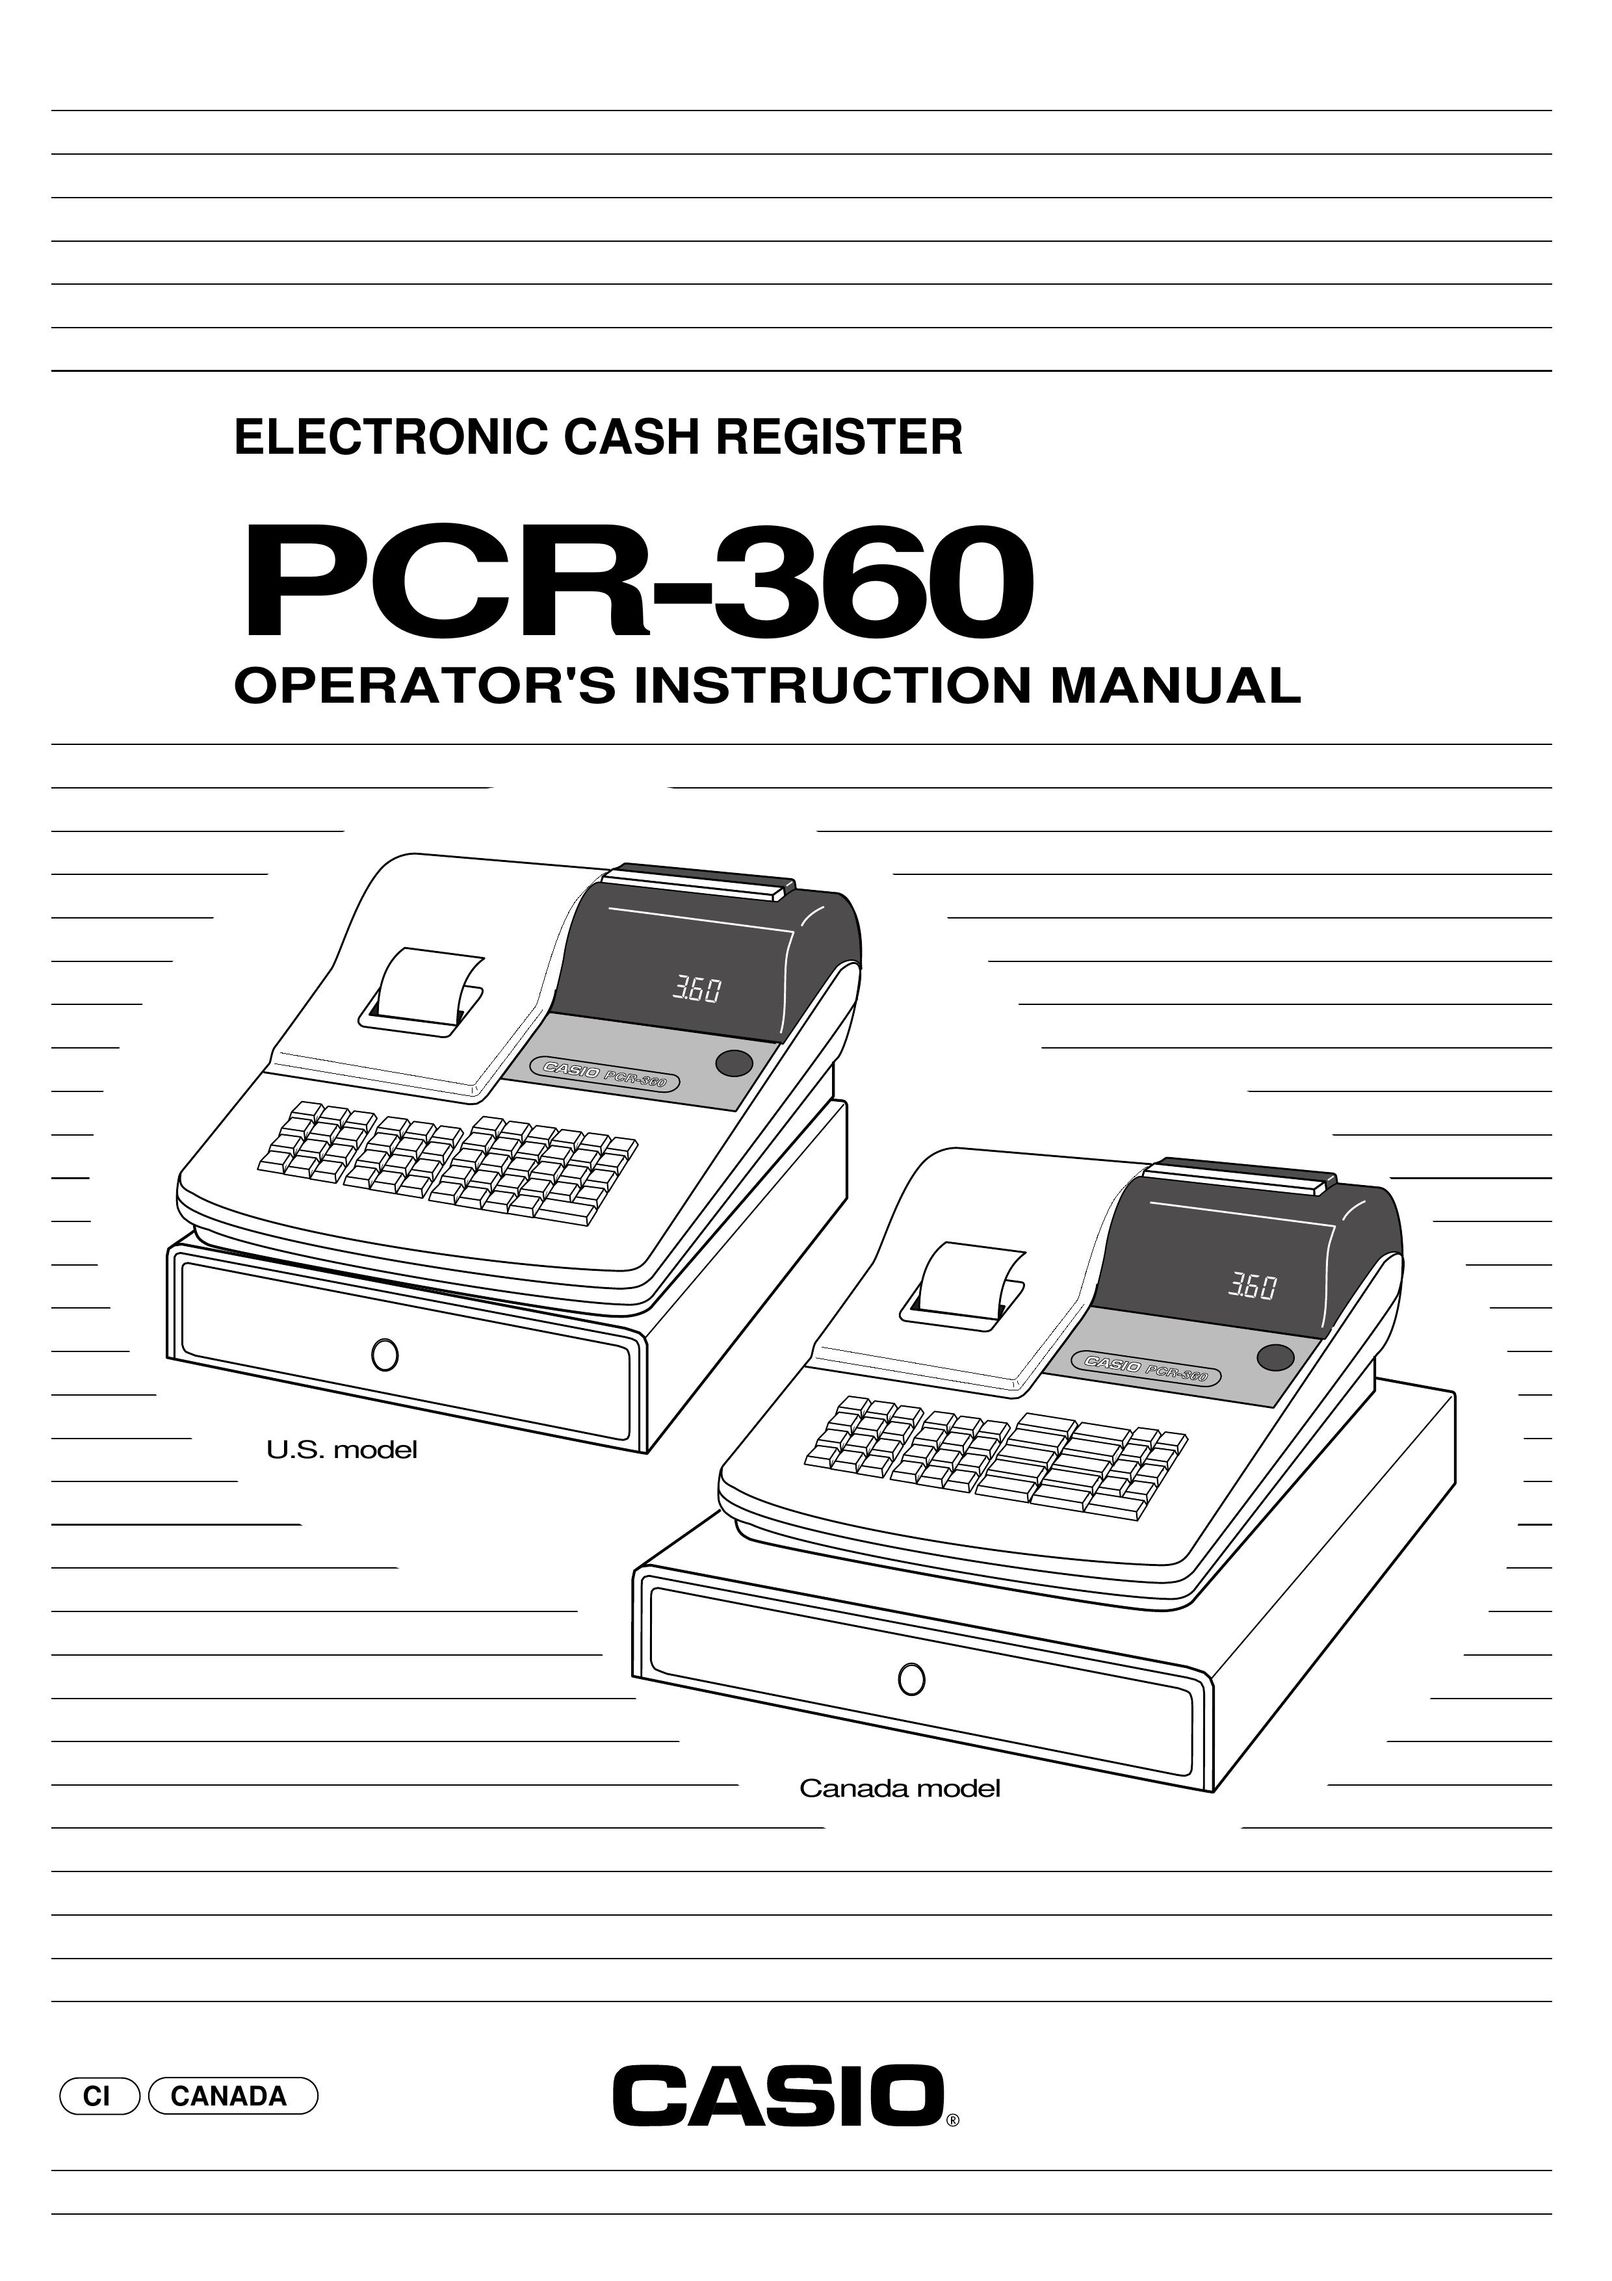 Casio pcr-360 Cash Register User Manual